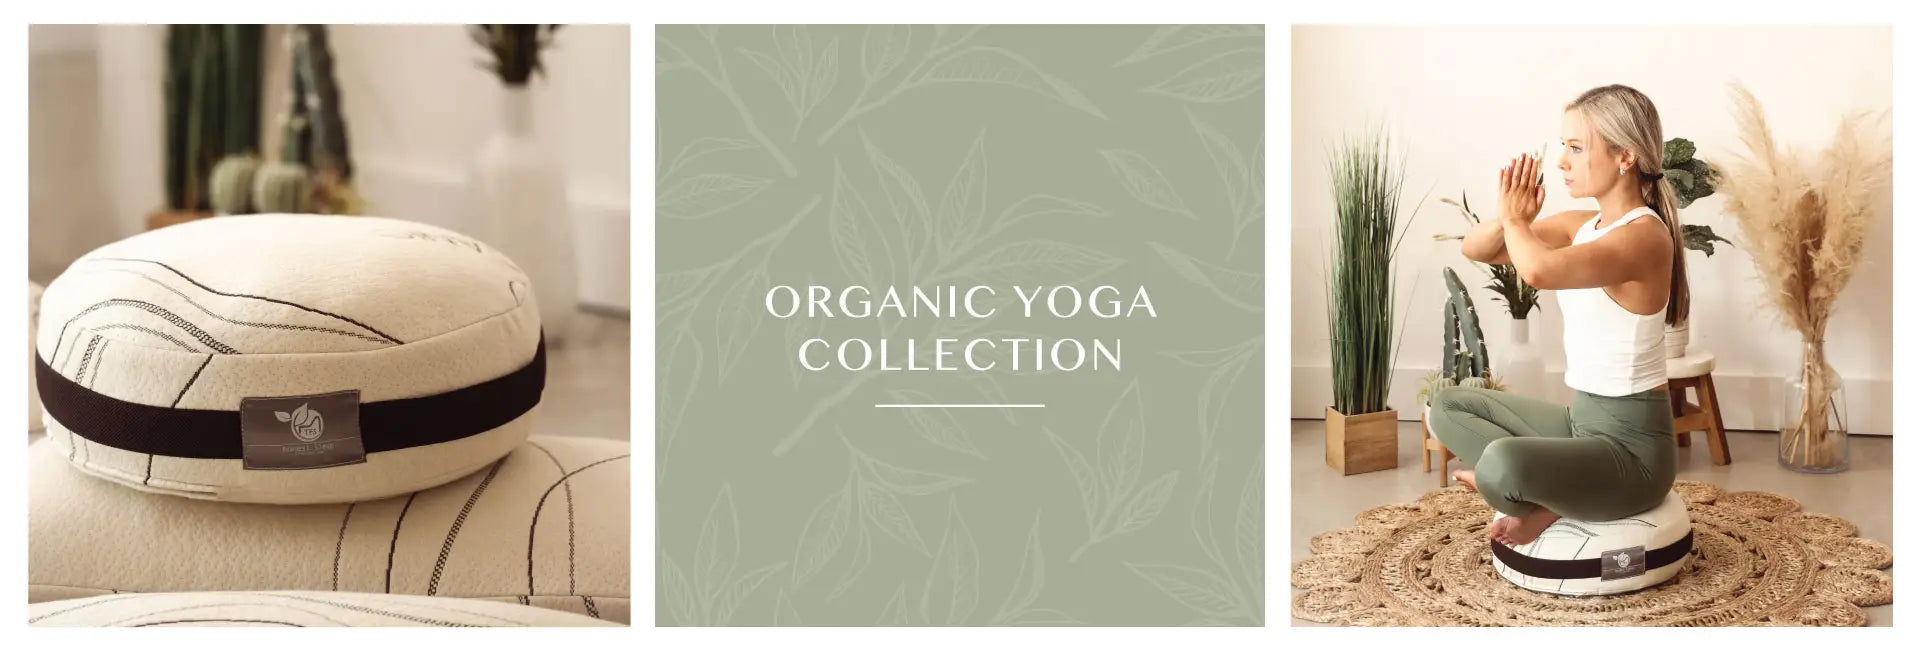 Organic Yoga Collection